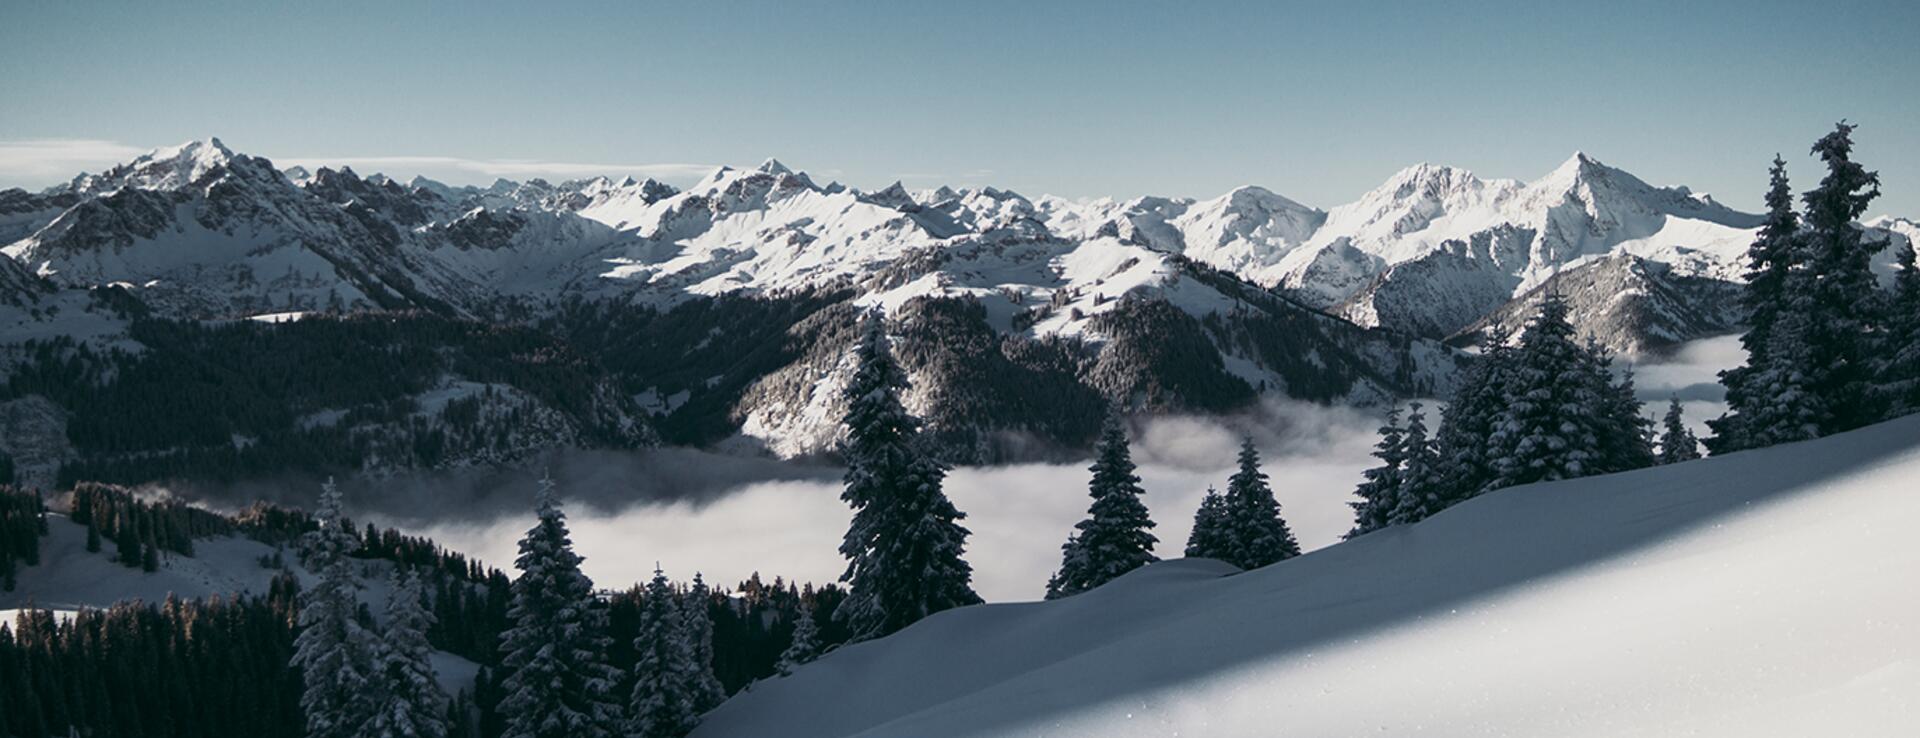 Neuschnee - Powder in den Allgäuer Alpen auf den Gipfeln über den Wolken | Der Engel in Tirol